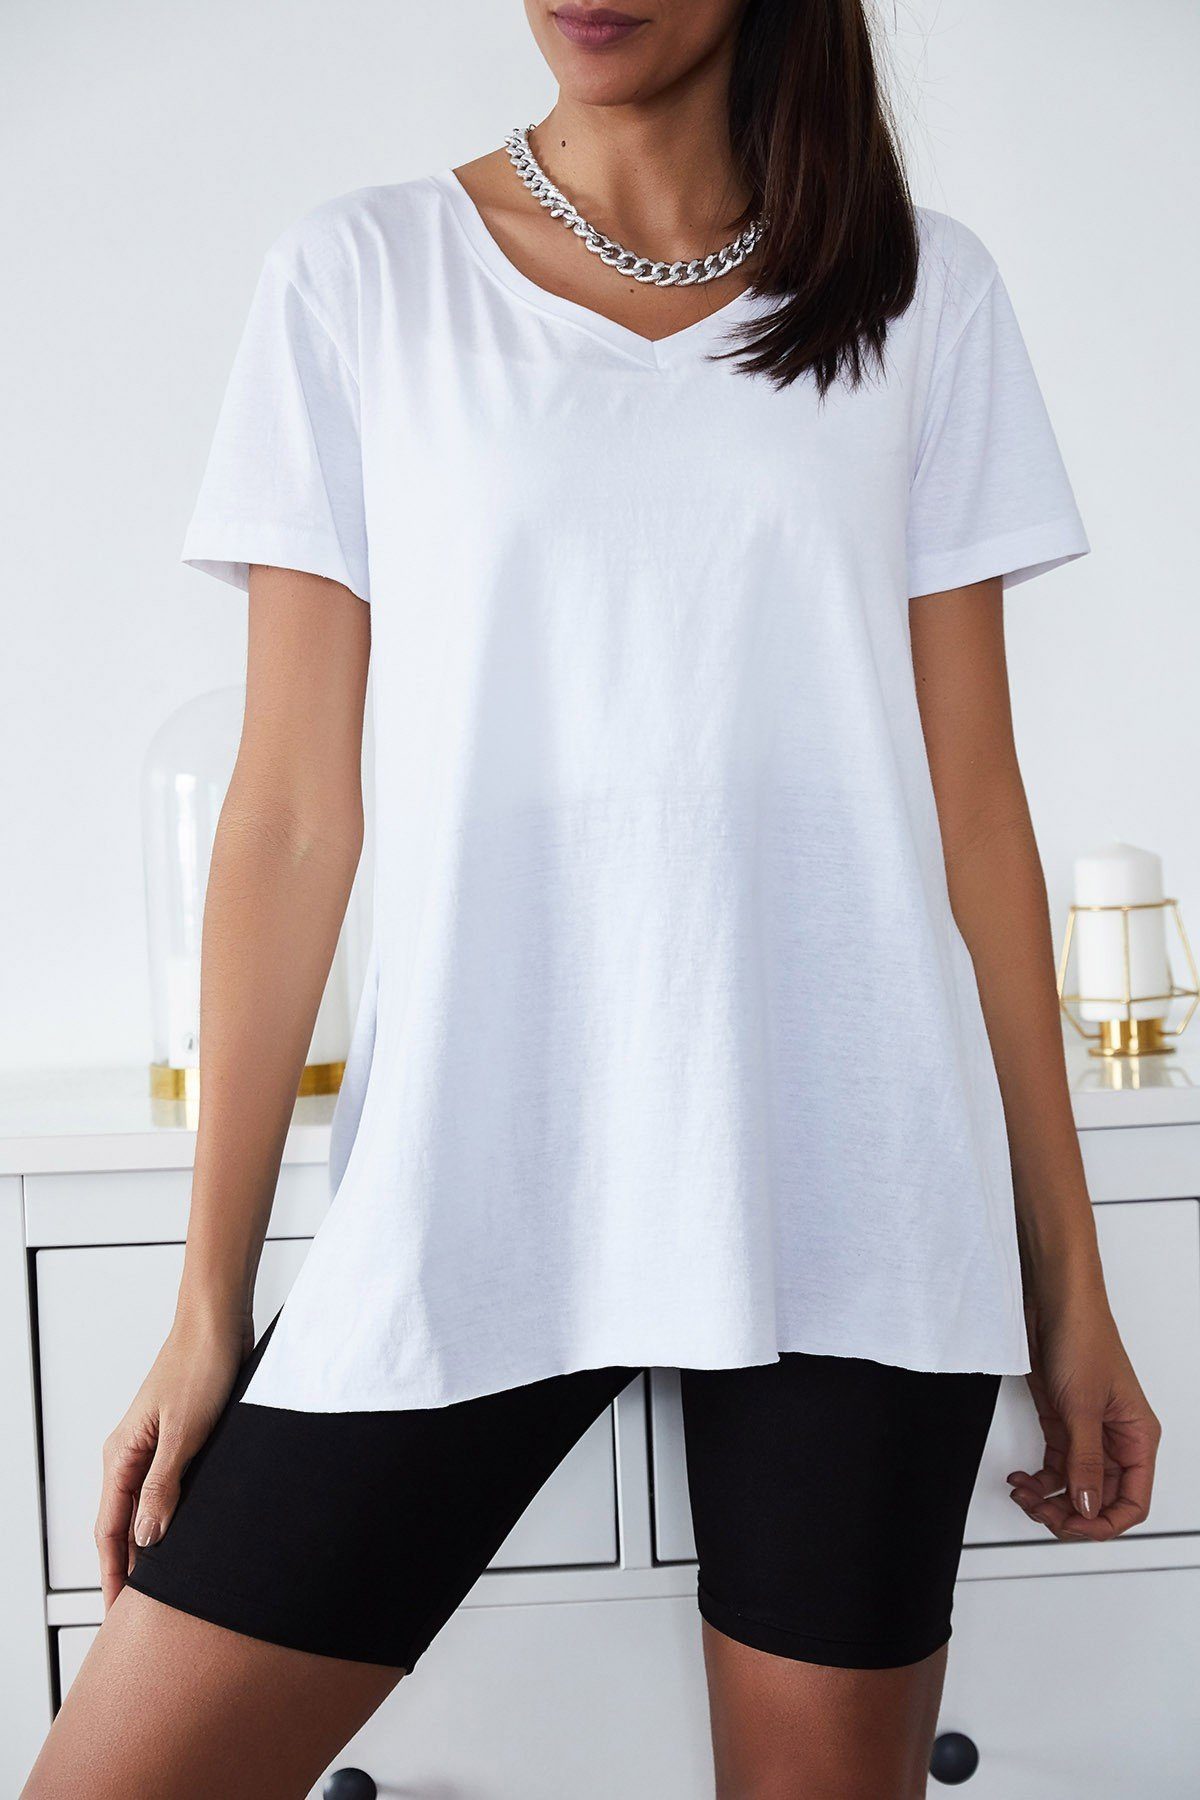 Jumeon T-Shirt X0577 Weiß, s Größe damen, XHN, 100% BAUMWOLLE